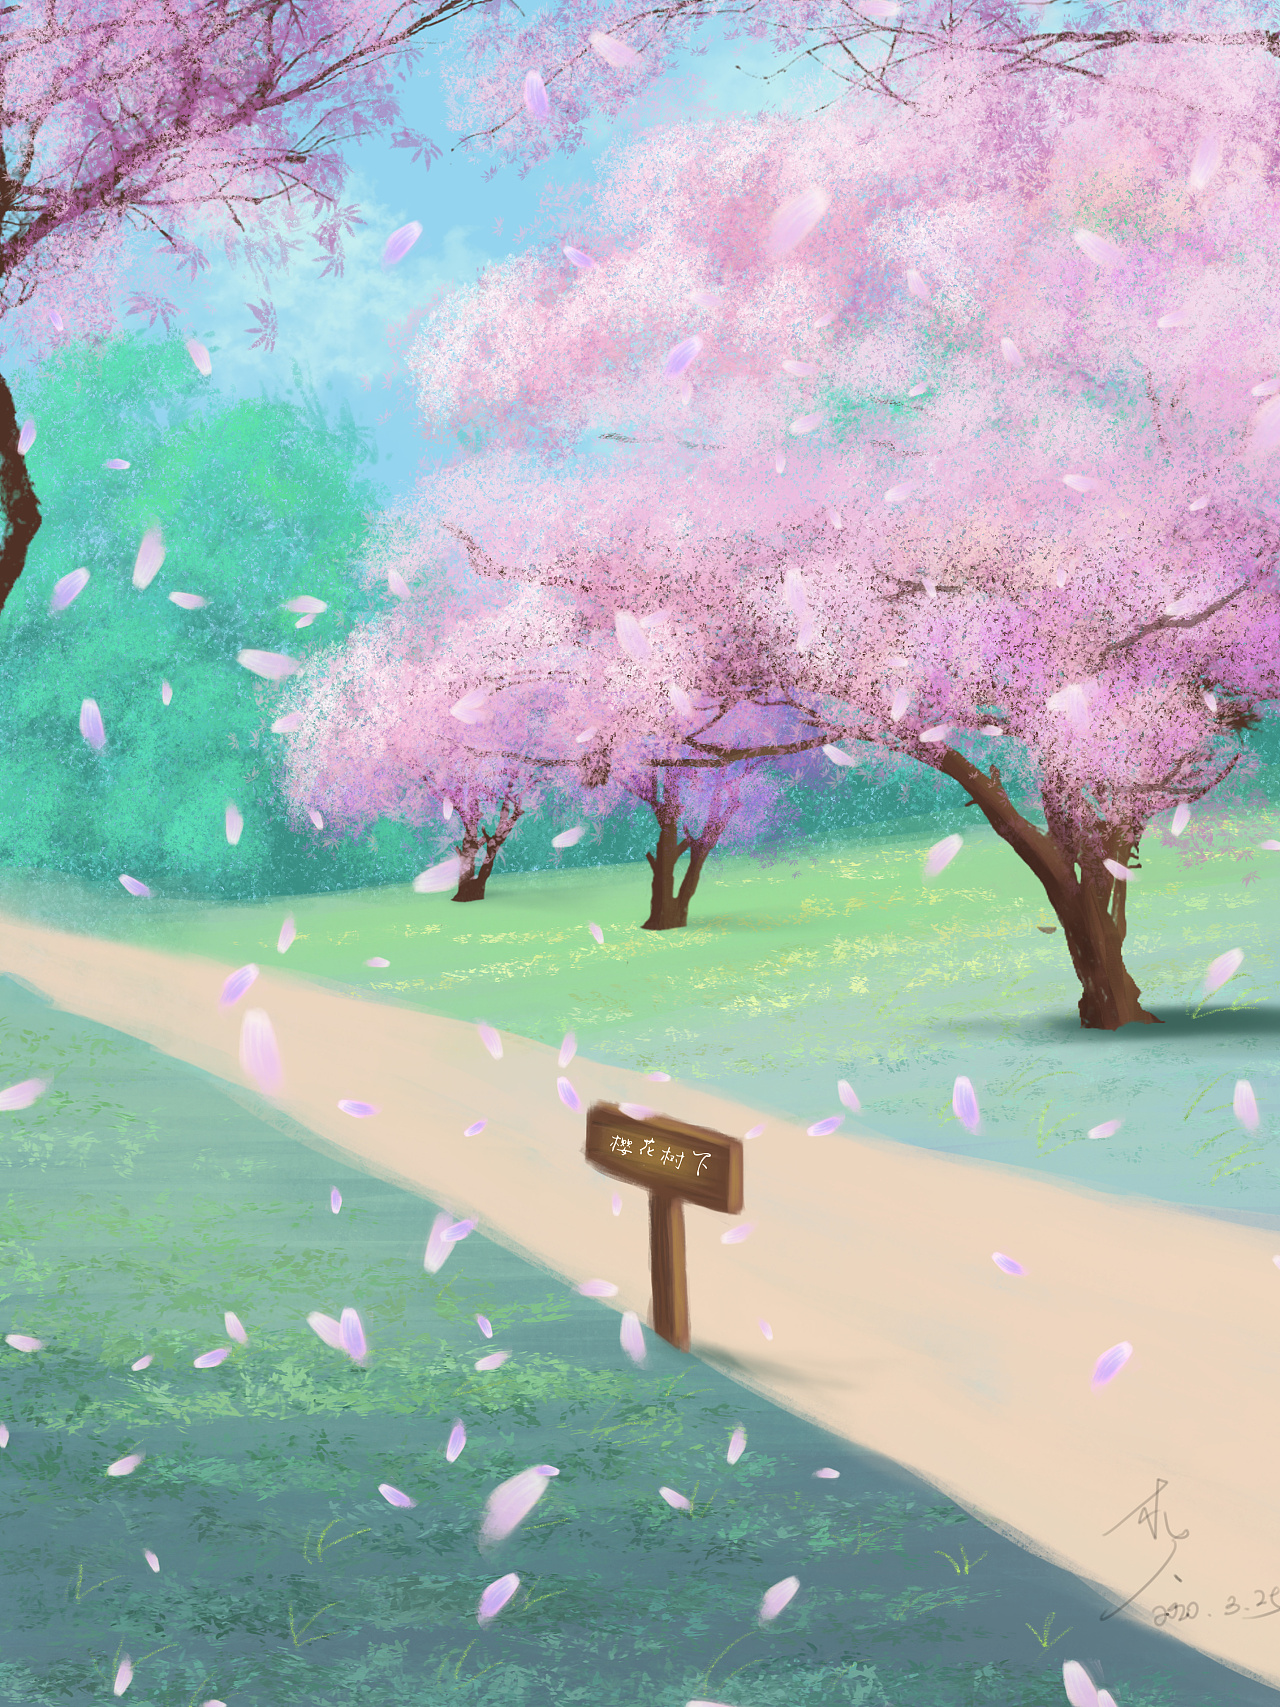 有关樱花的日本动漫的壁纸_百度知道